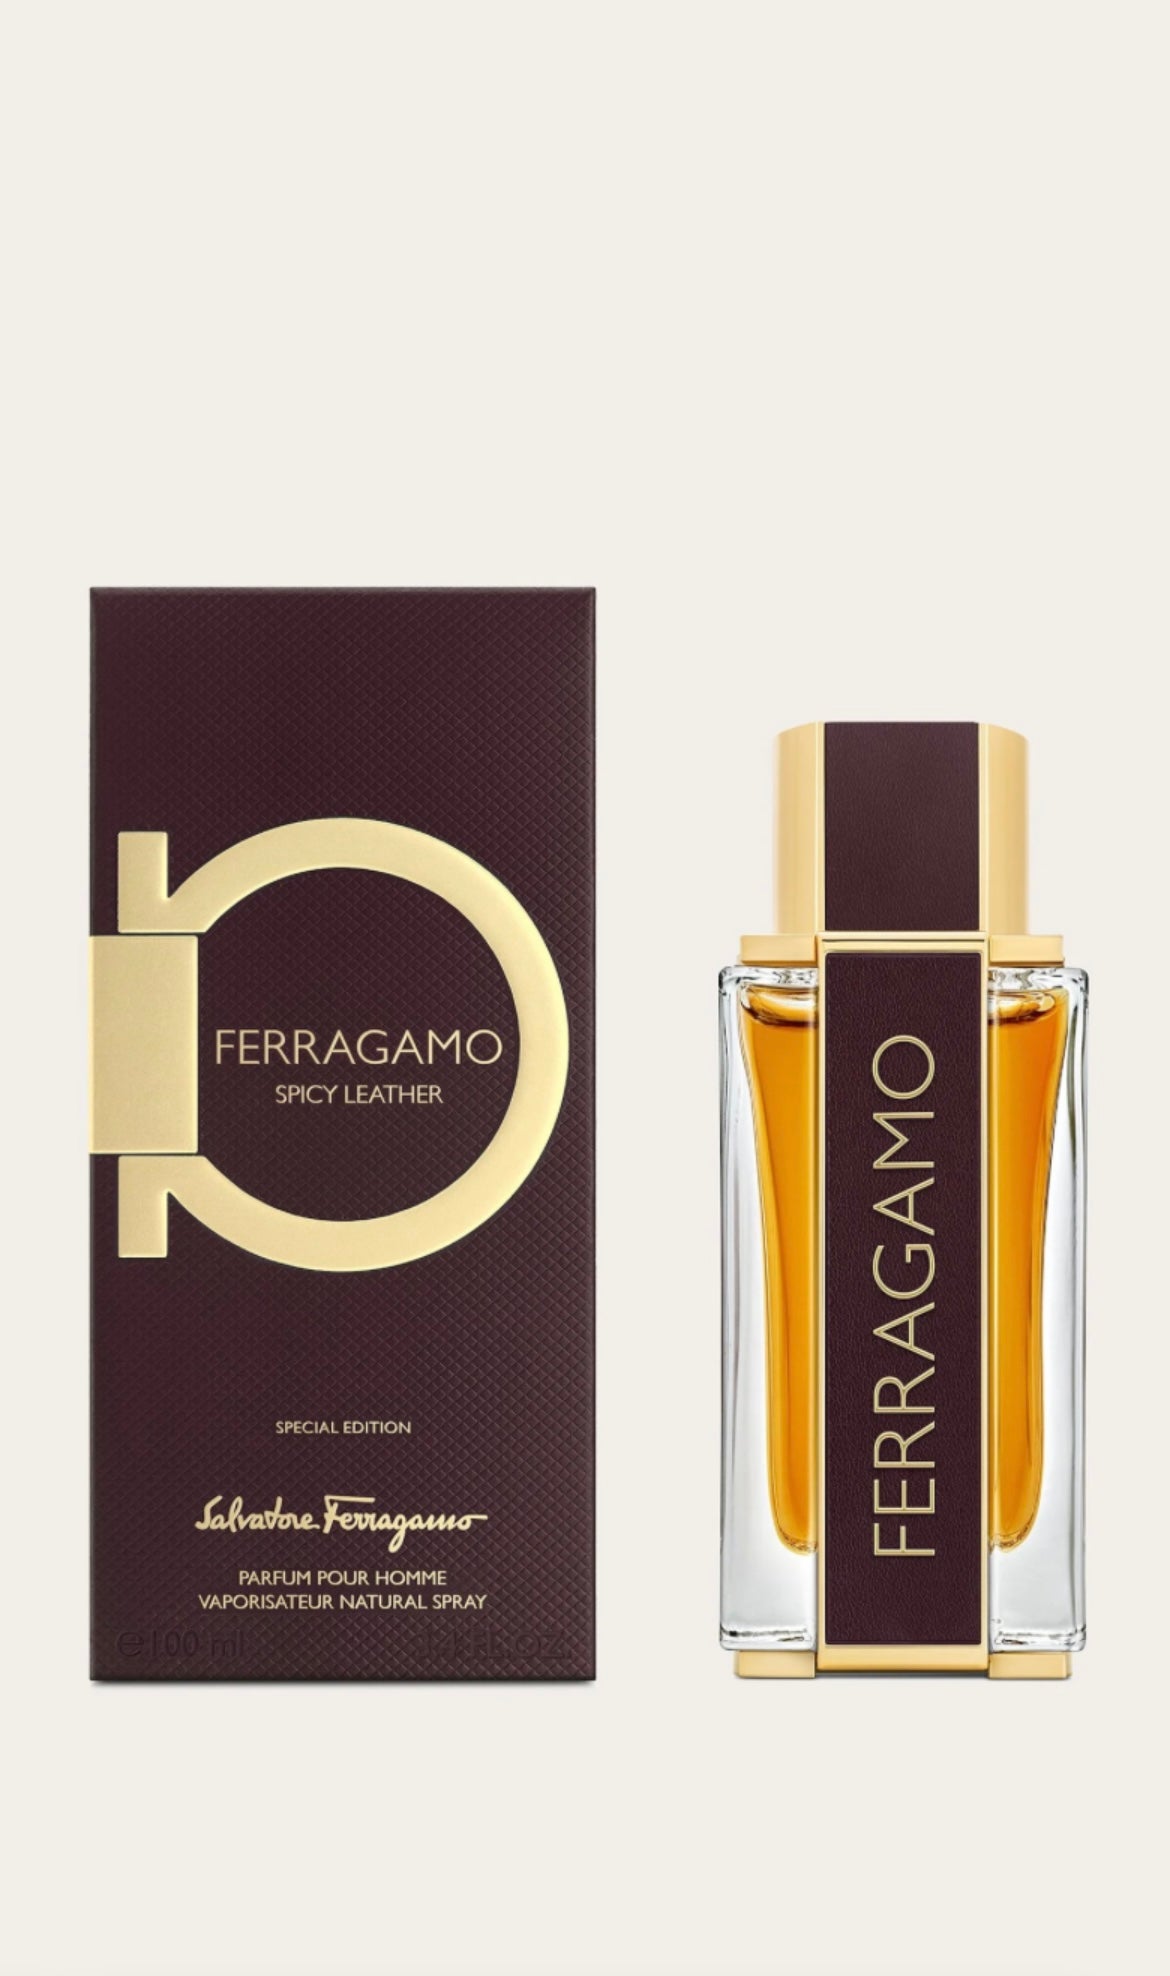 FERRAGAMO Spicy Leather Pour Homme Parfum 100ml